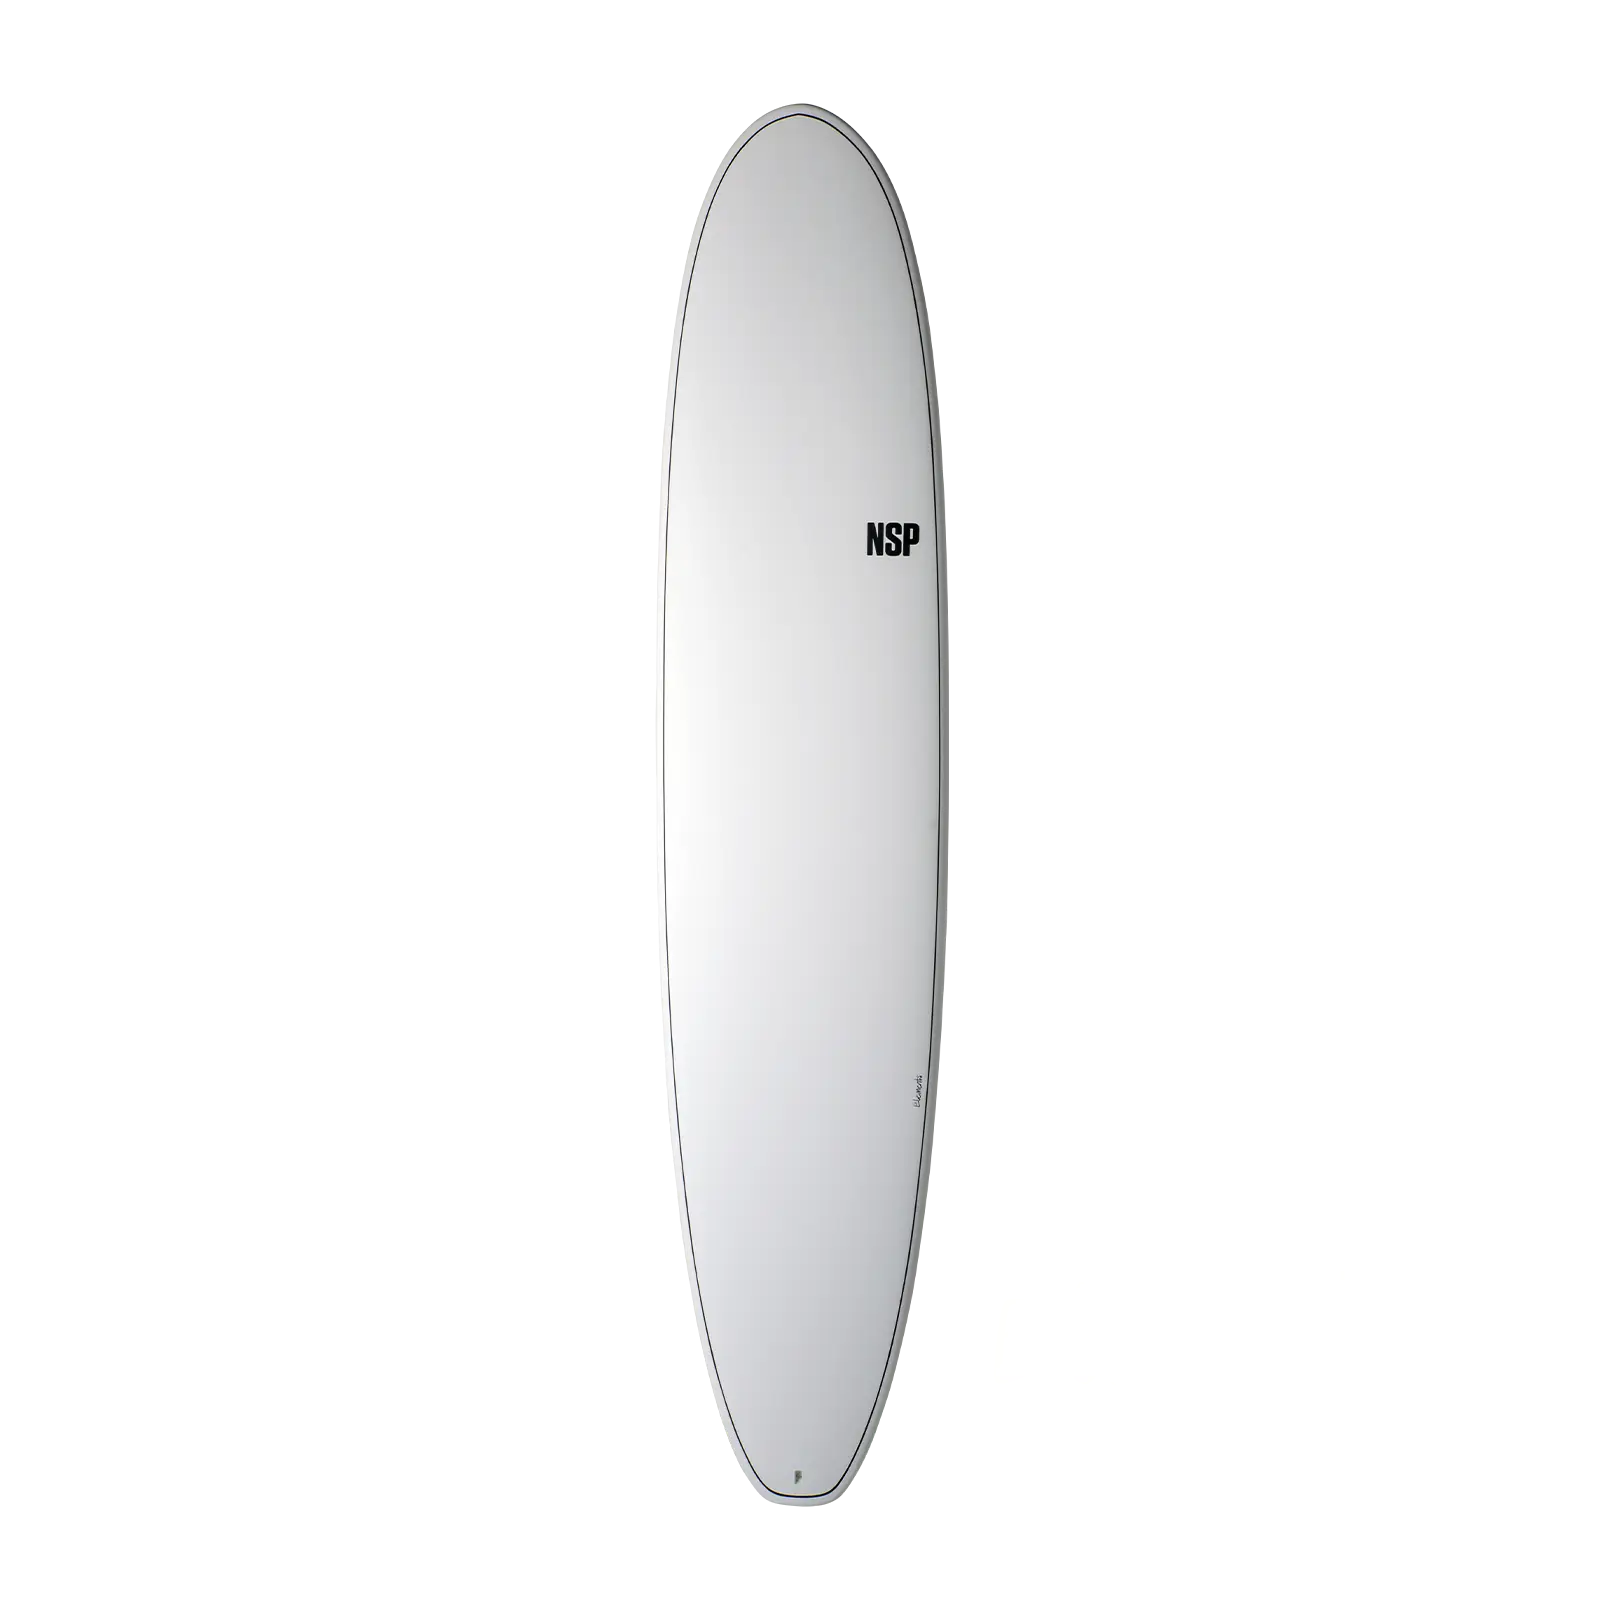 Longboard Surfboards NSP Elements White